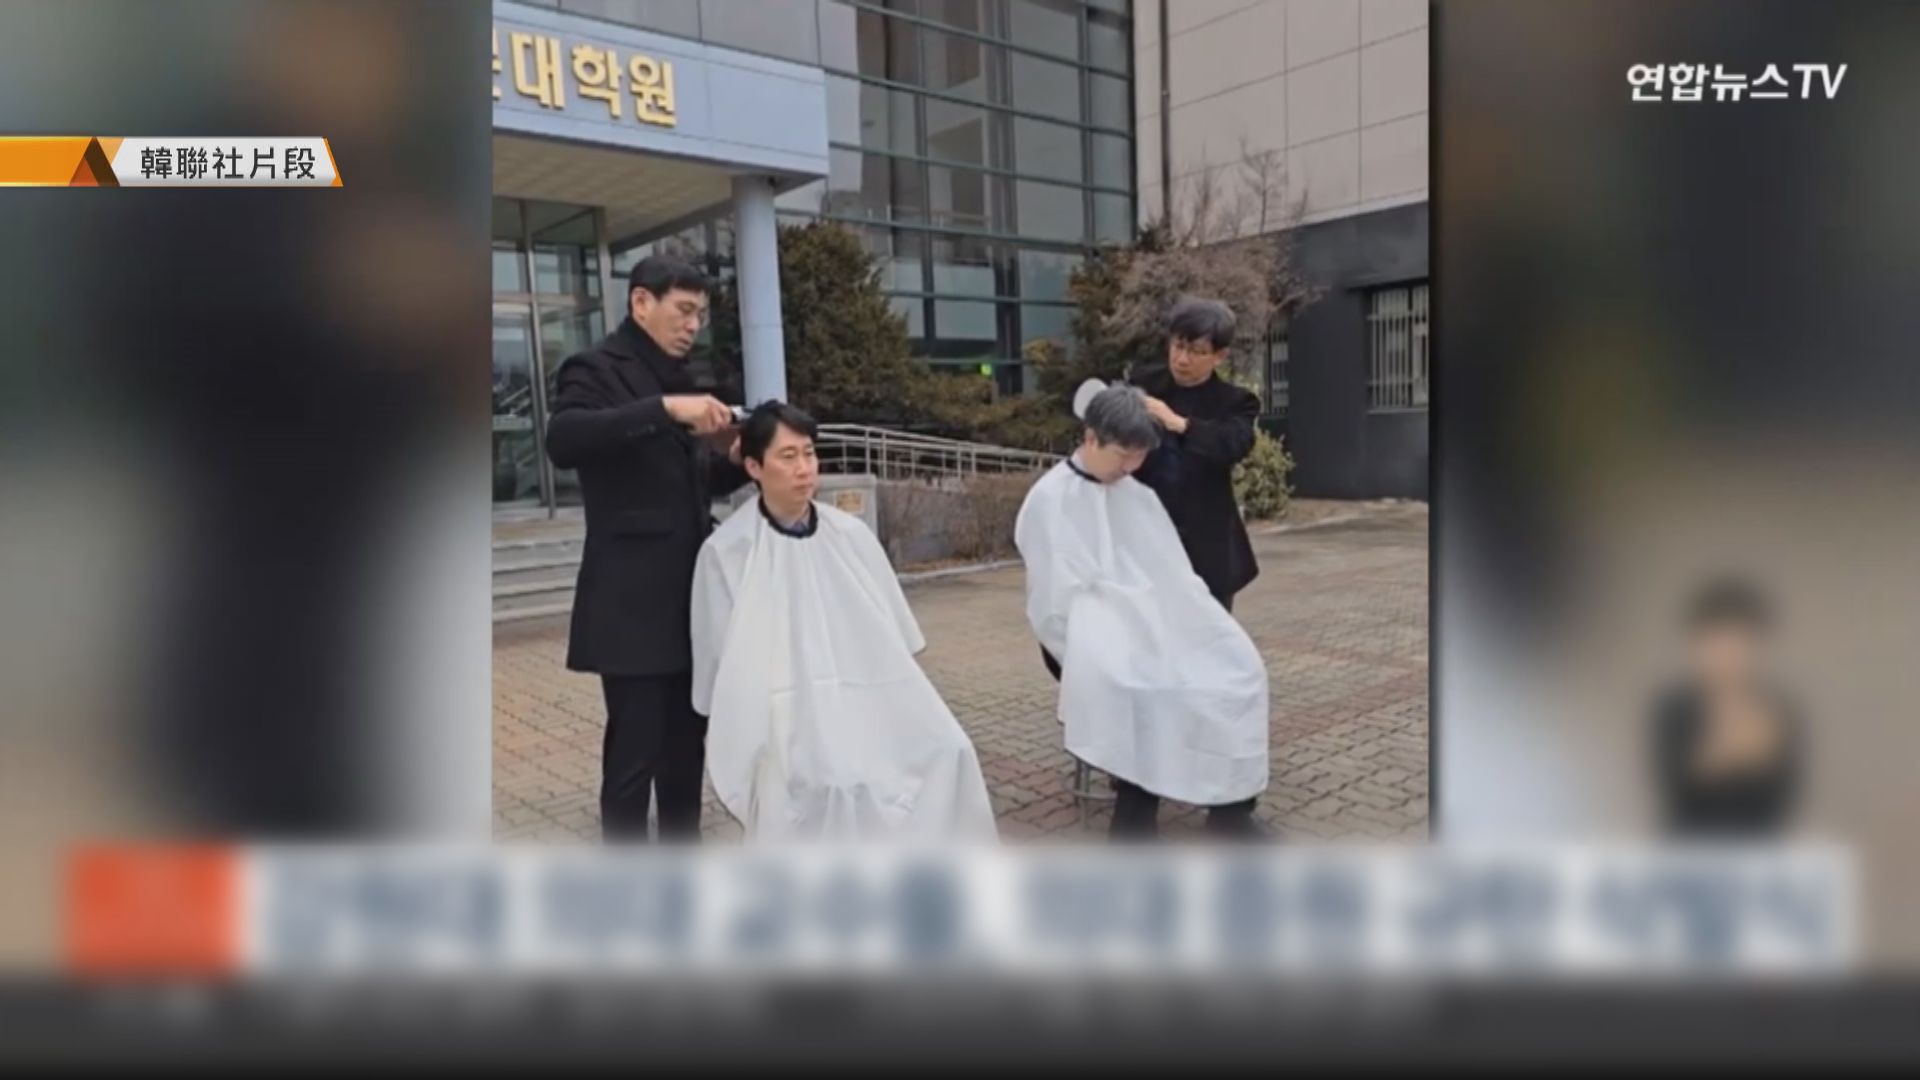 南韓醫生工潮超過兩周 醫學院教授剃頭聲援